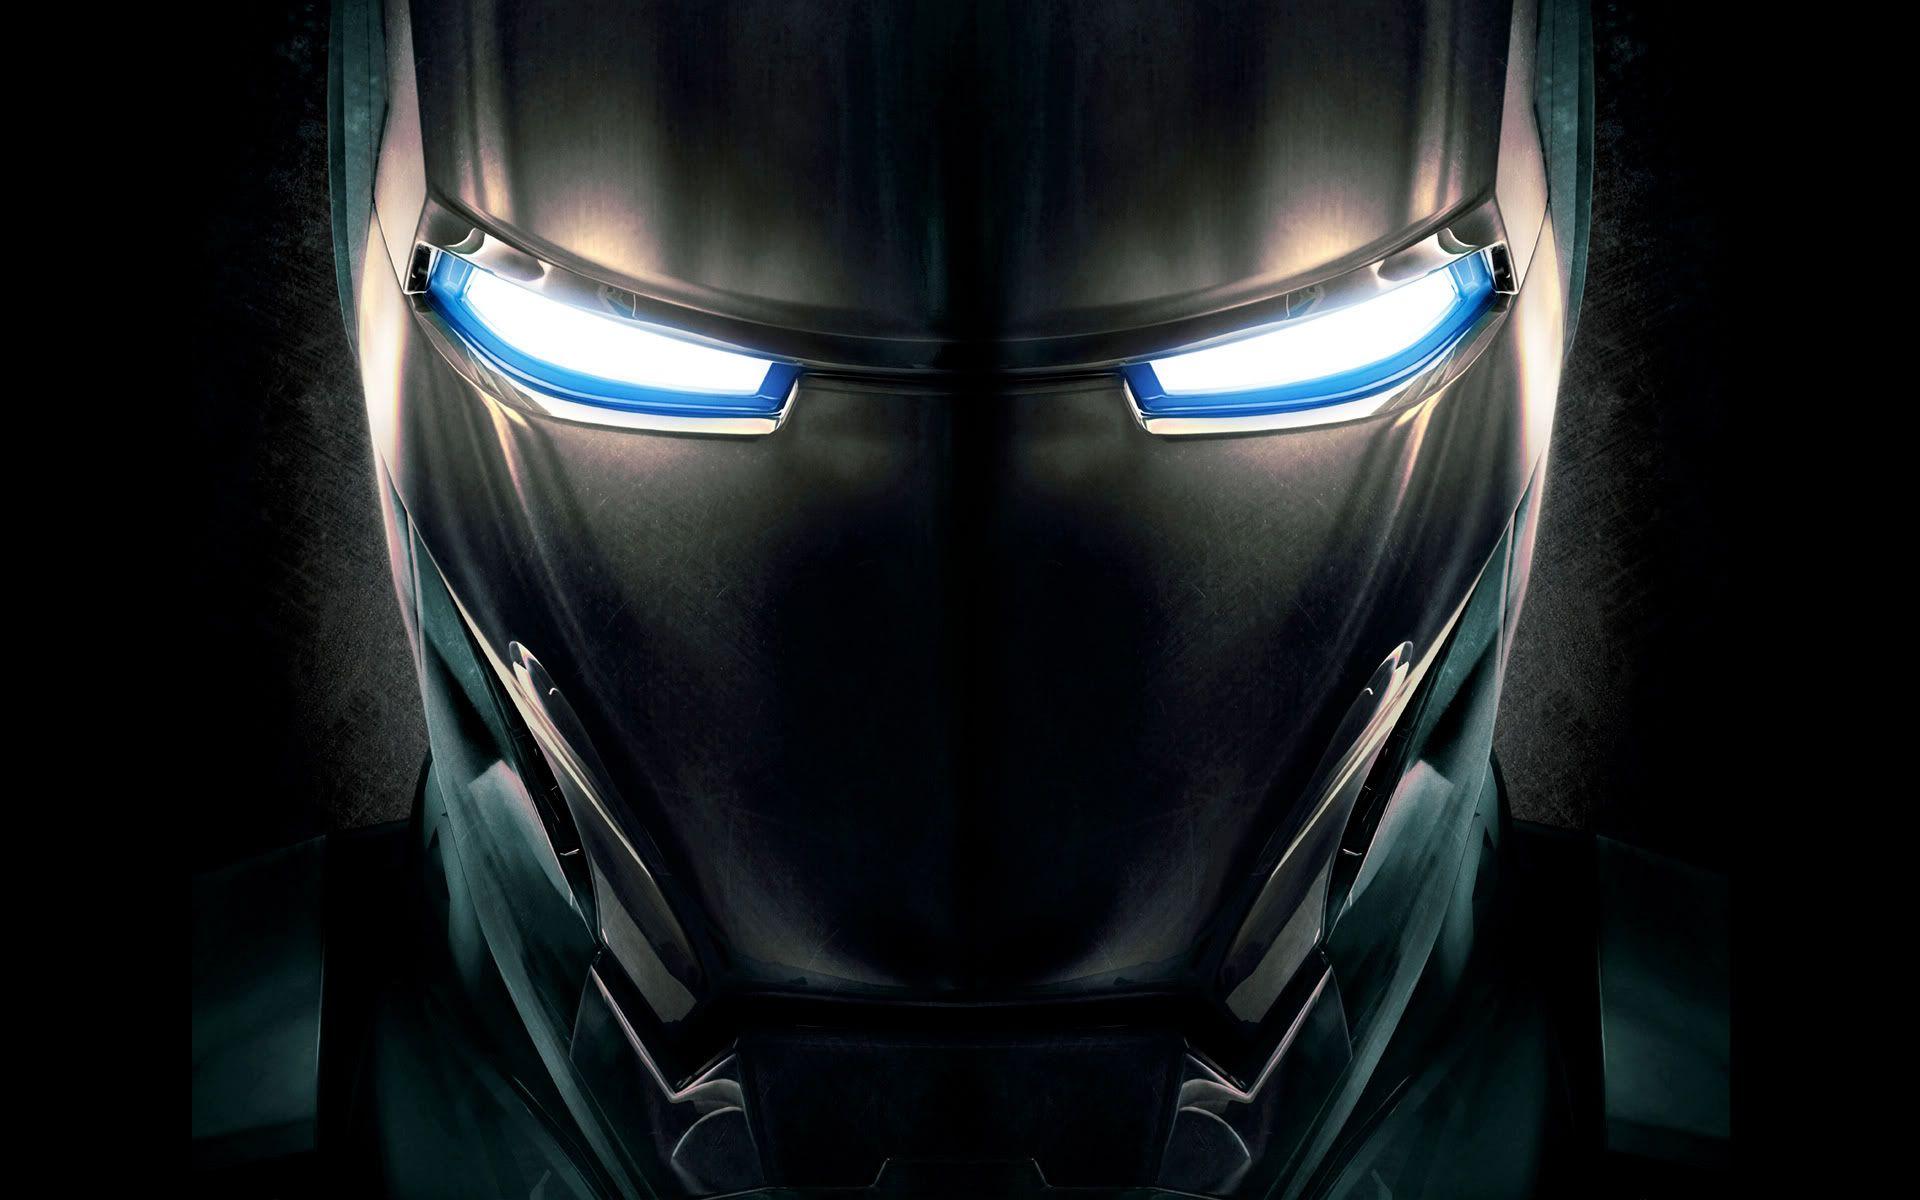 Iron Man War Machine Wallpaper Image & Picture